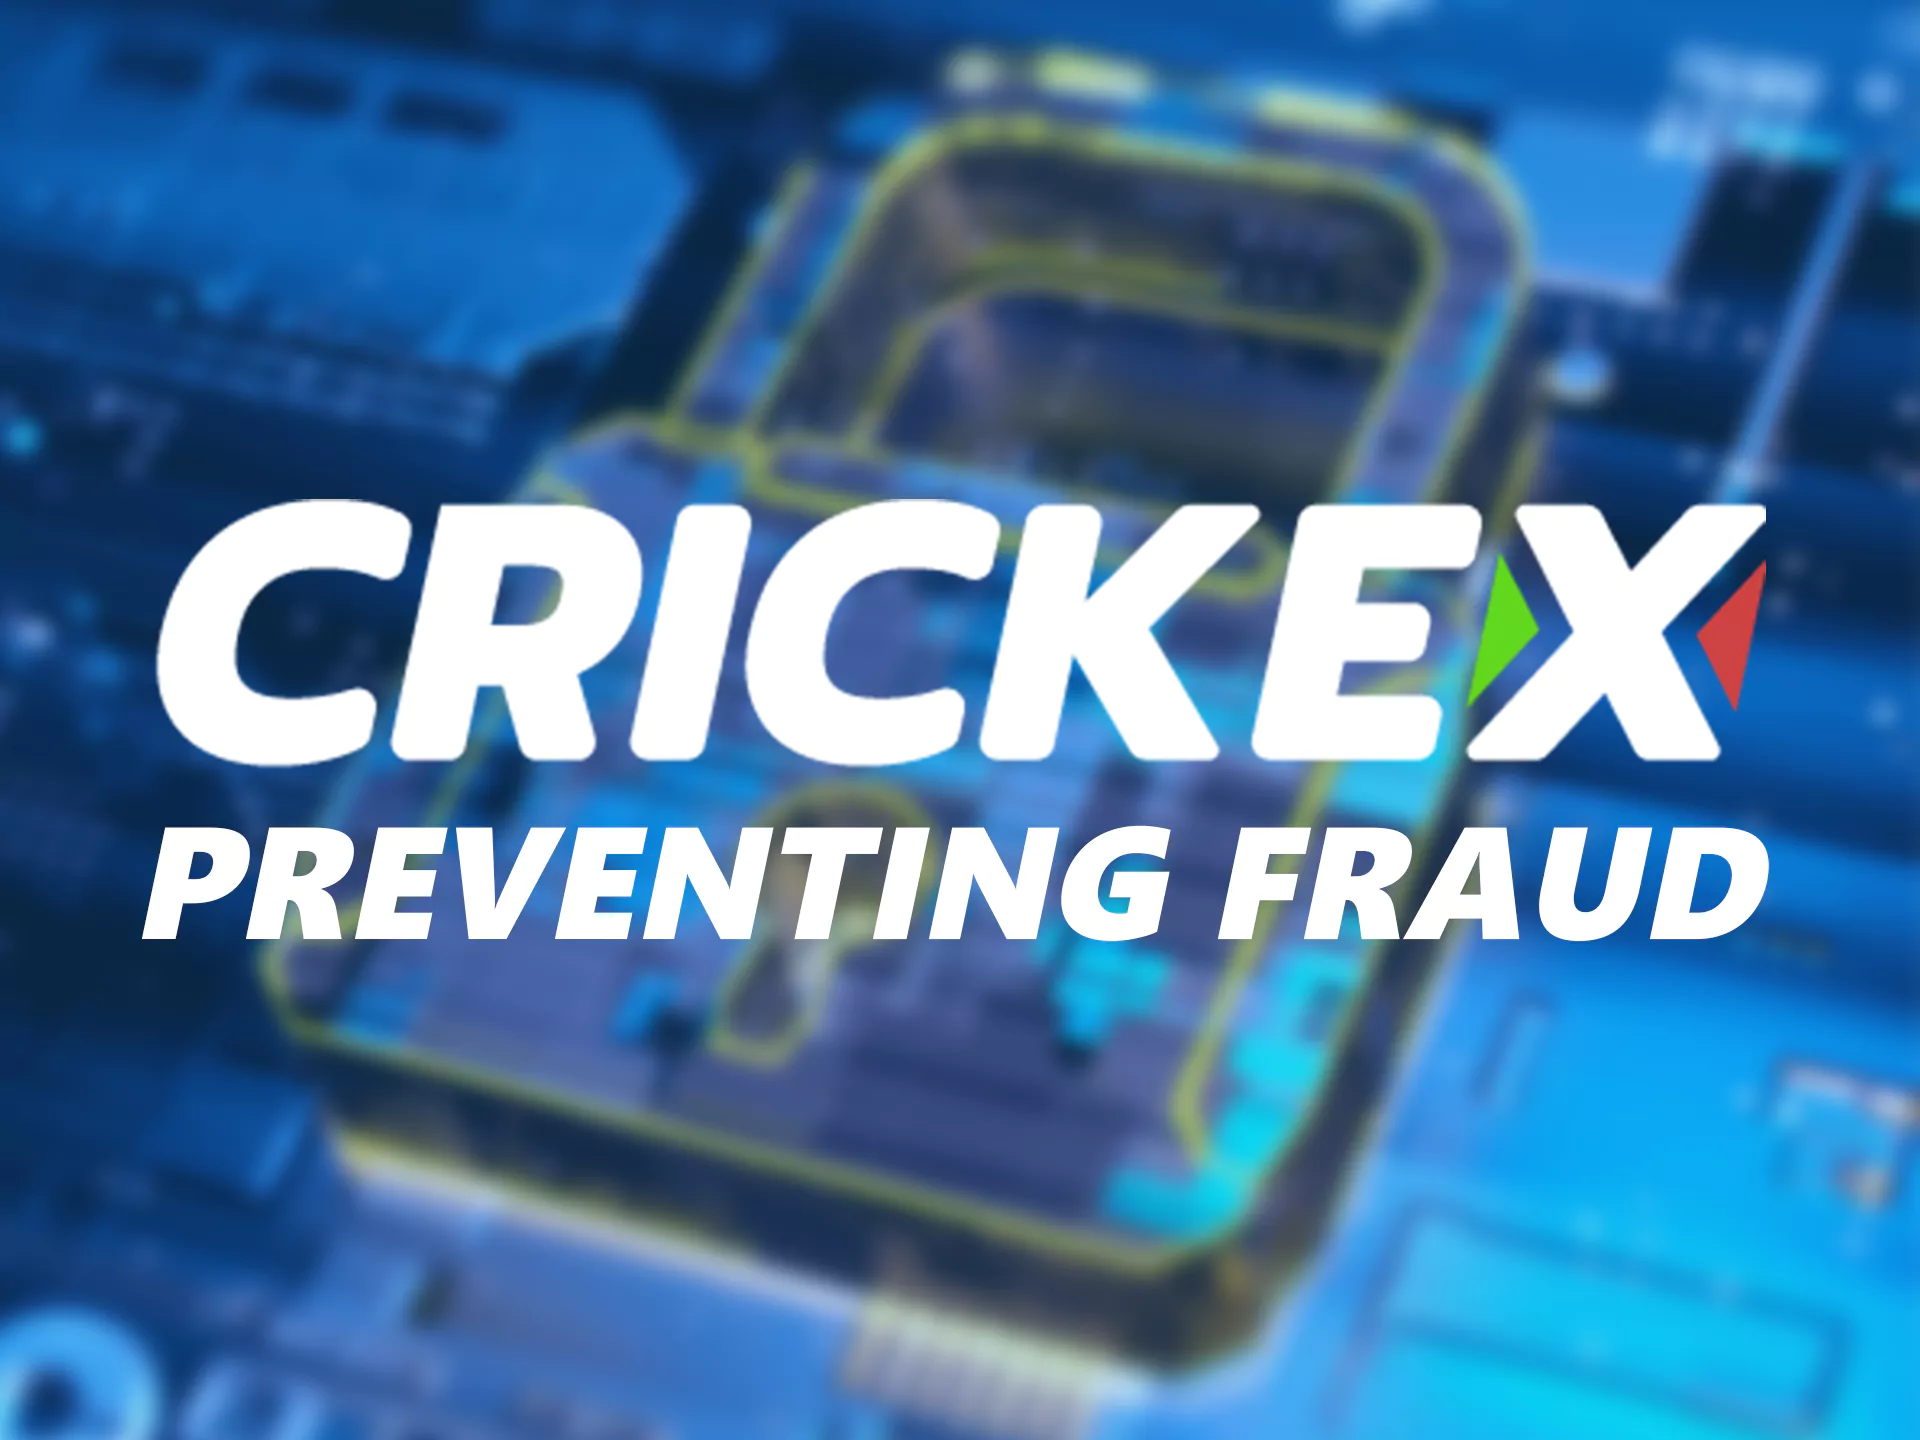 Crickex आपको धोखाधड़ी से बचाता है।